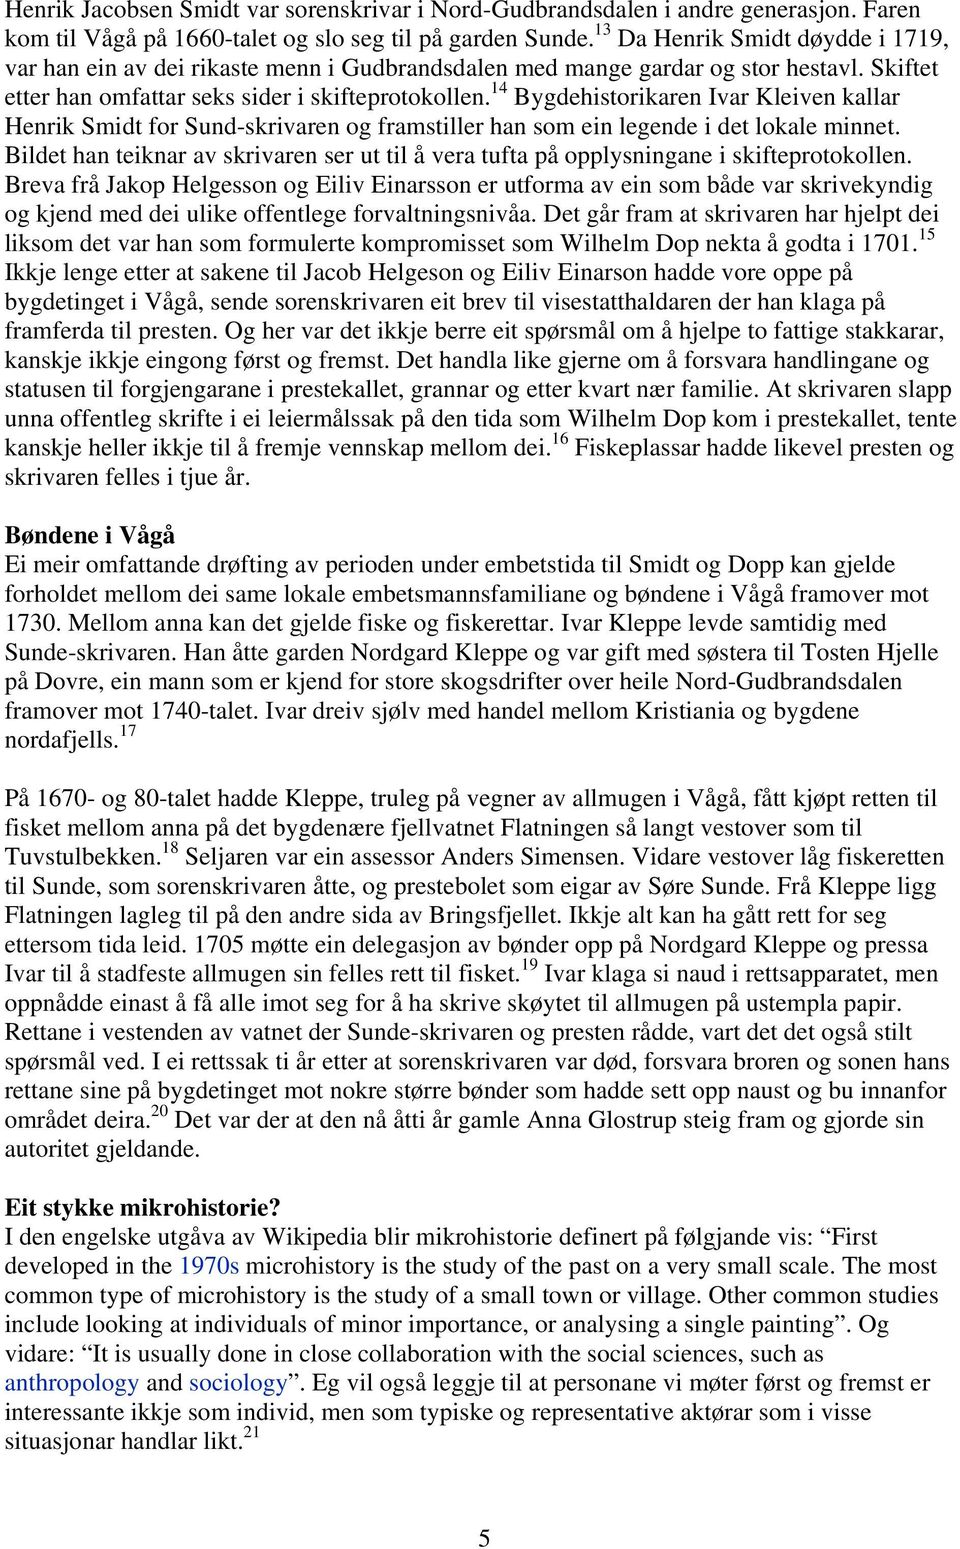 14 Bygdehistorikaren Ivar Kleiven kallar Henrik Smidt for Sund-skrivaren og framstiller han som ein legende i det lokale minnet.